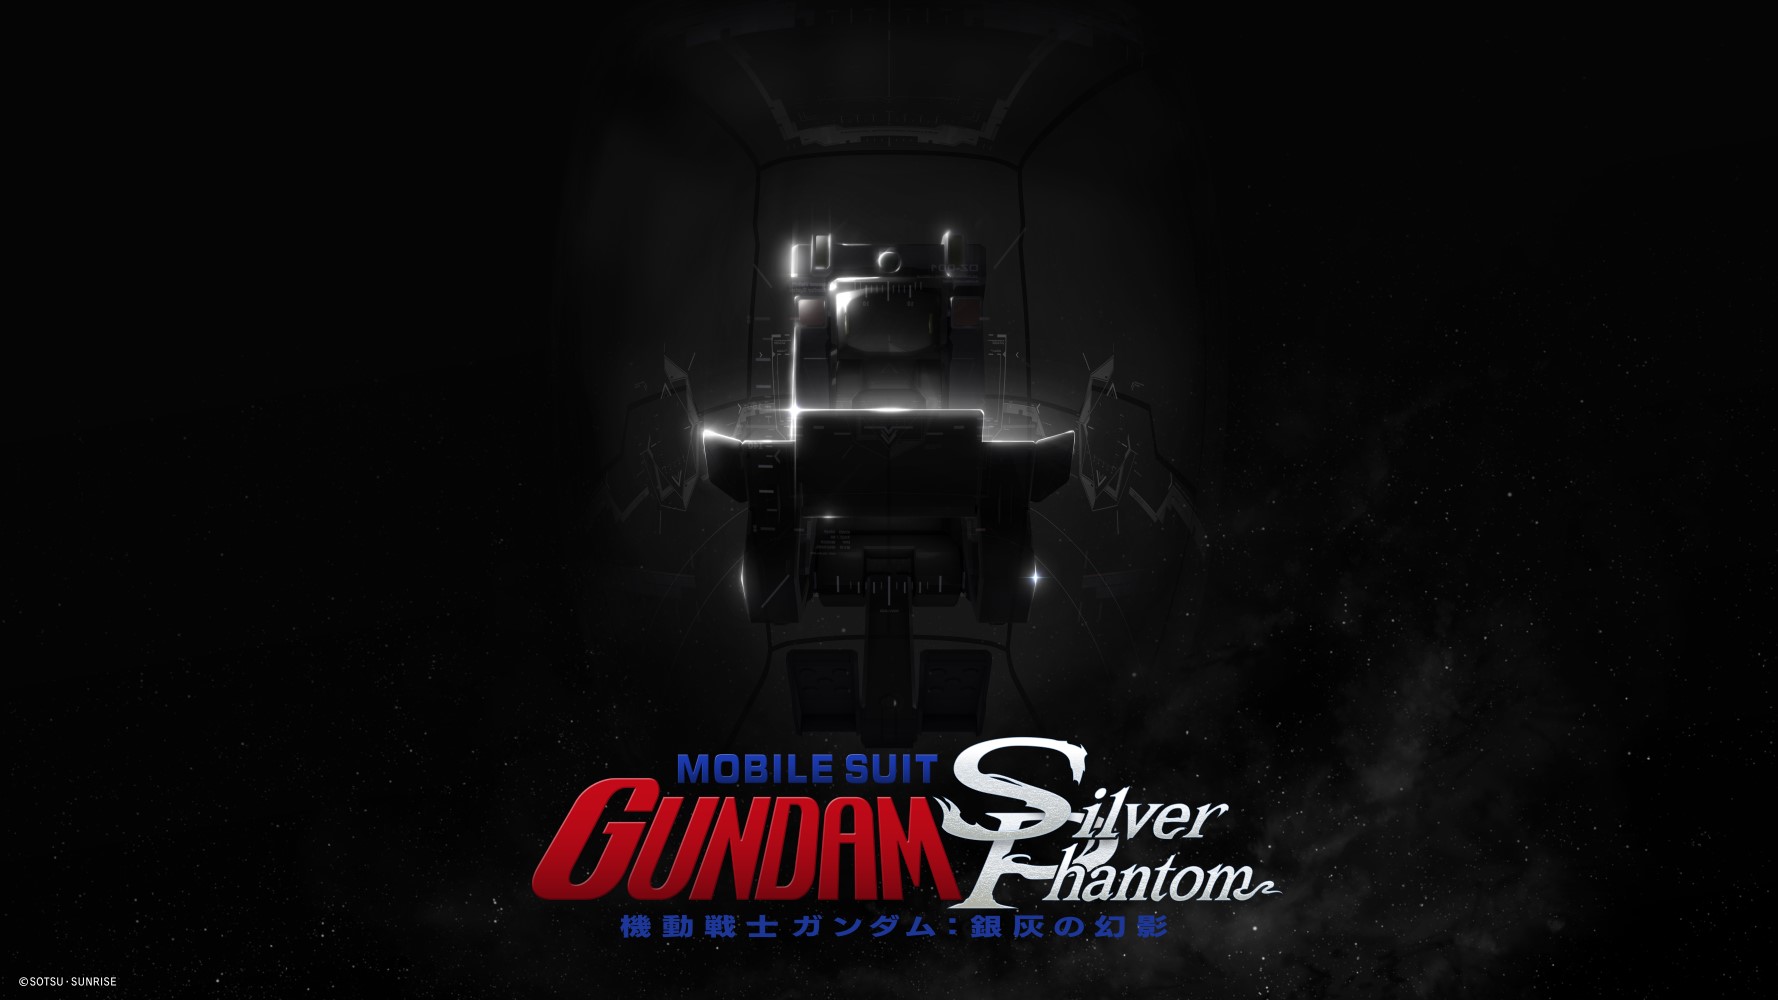 Νέες λεπτομέρειες για το Mobile Suit Gundam: Silver Phantom - MonsterVine